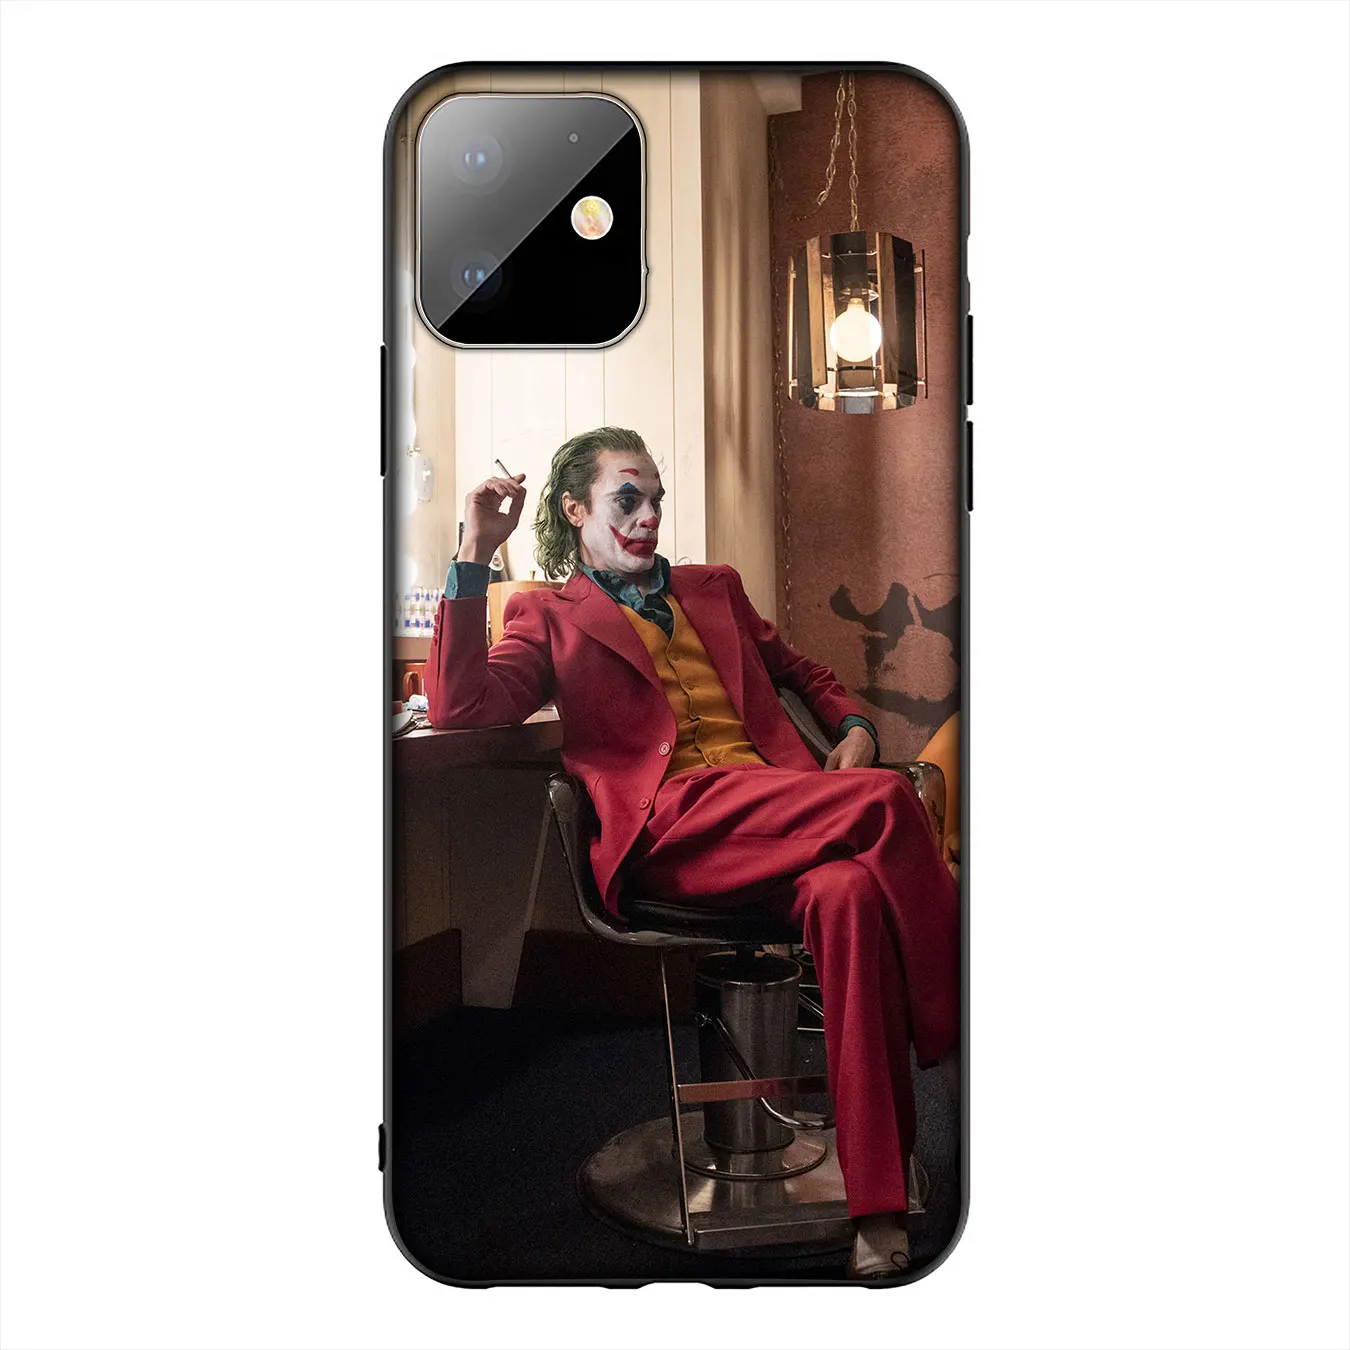 Мягкий силиконовый чехол joker Joaquin Phoenix для iPhone 11 Pro XR X XS Max 6 6S 7 8 Plus 5 5S SE черный чехол для телефона - Цвет: 1